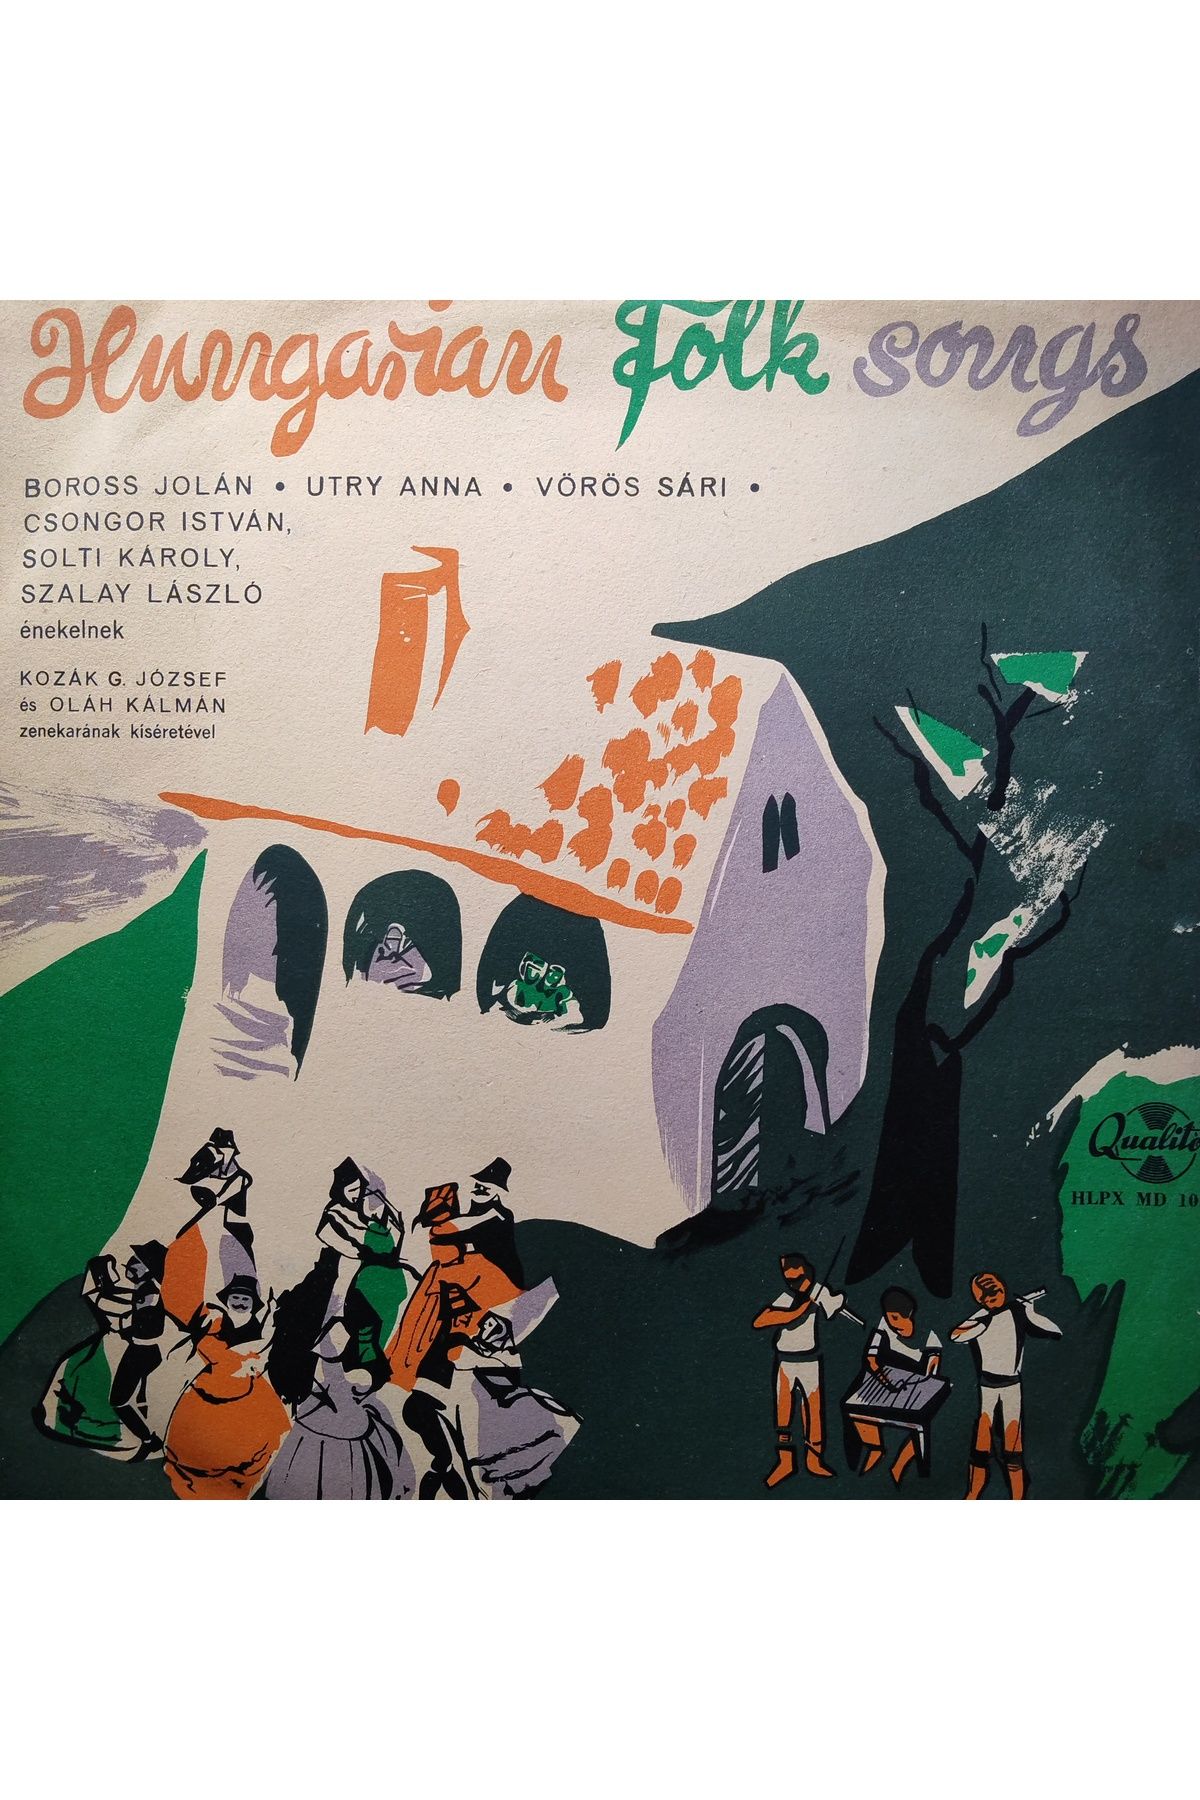 mazi plak Hungarian Folk Songs Orijinal Dönem Baskı 33'lük Plak